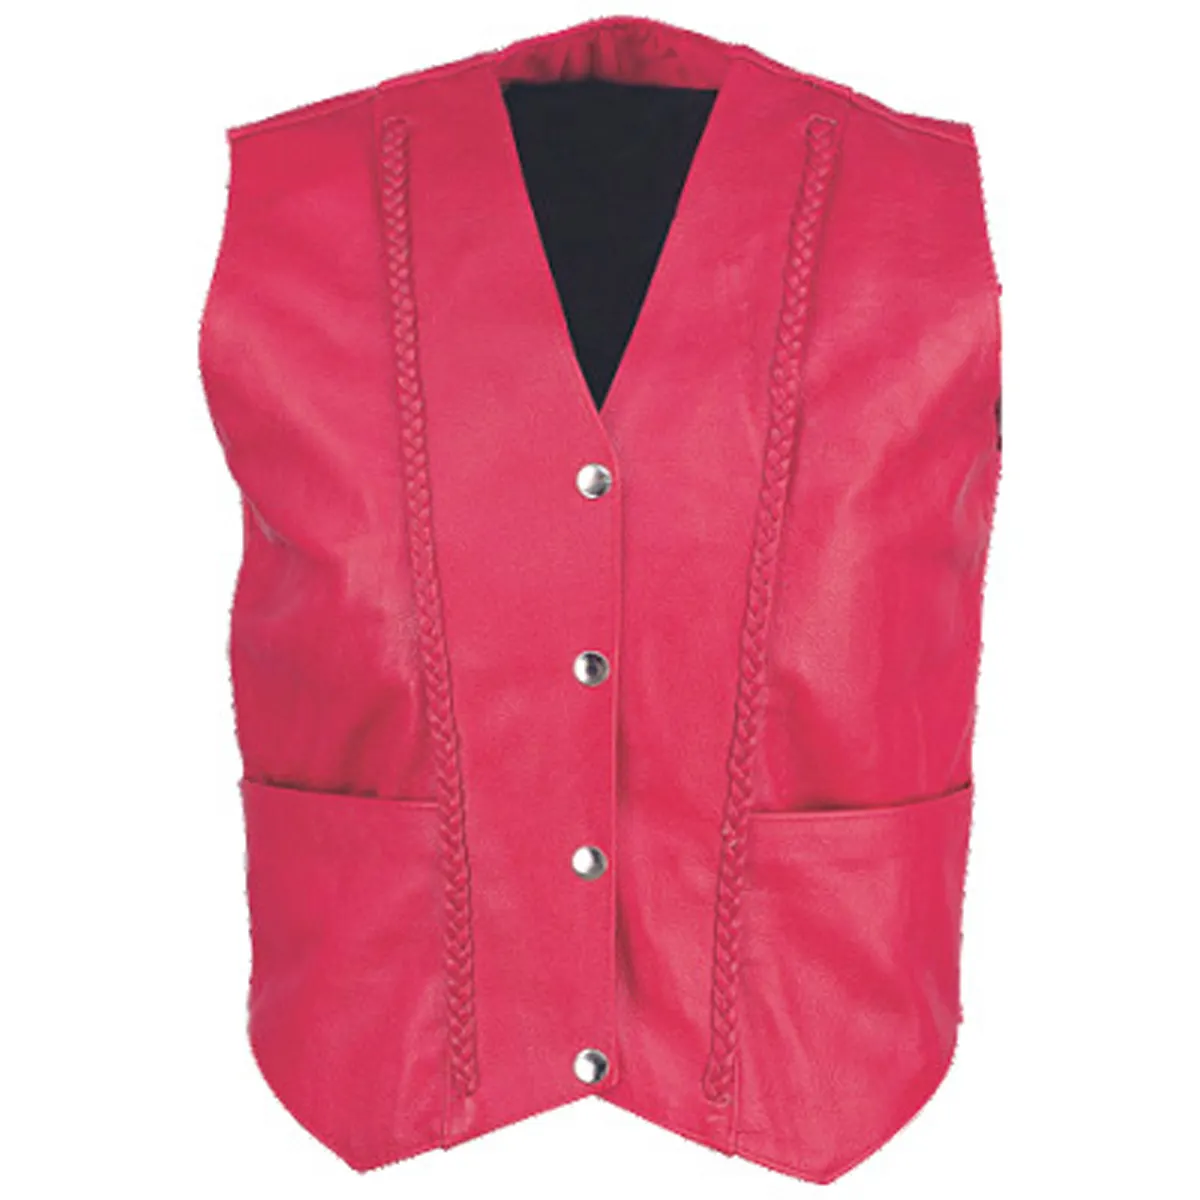 HMB-3141A женский кожаный жилет красного цвета с косами модное пальто на талии мотоциклетная одежда Жилеты Оптом